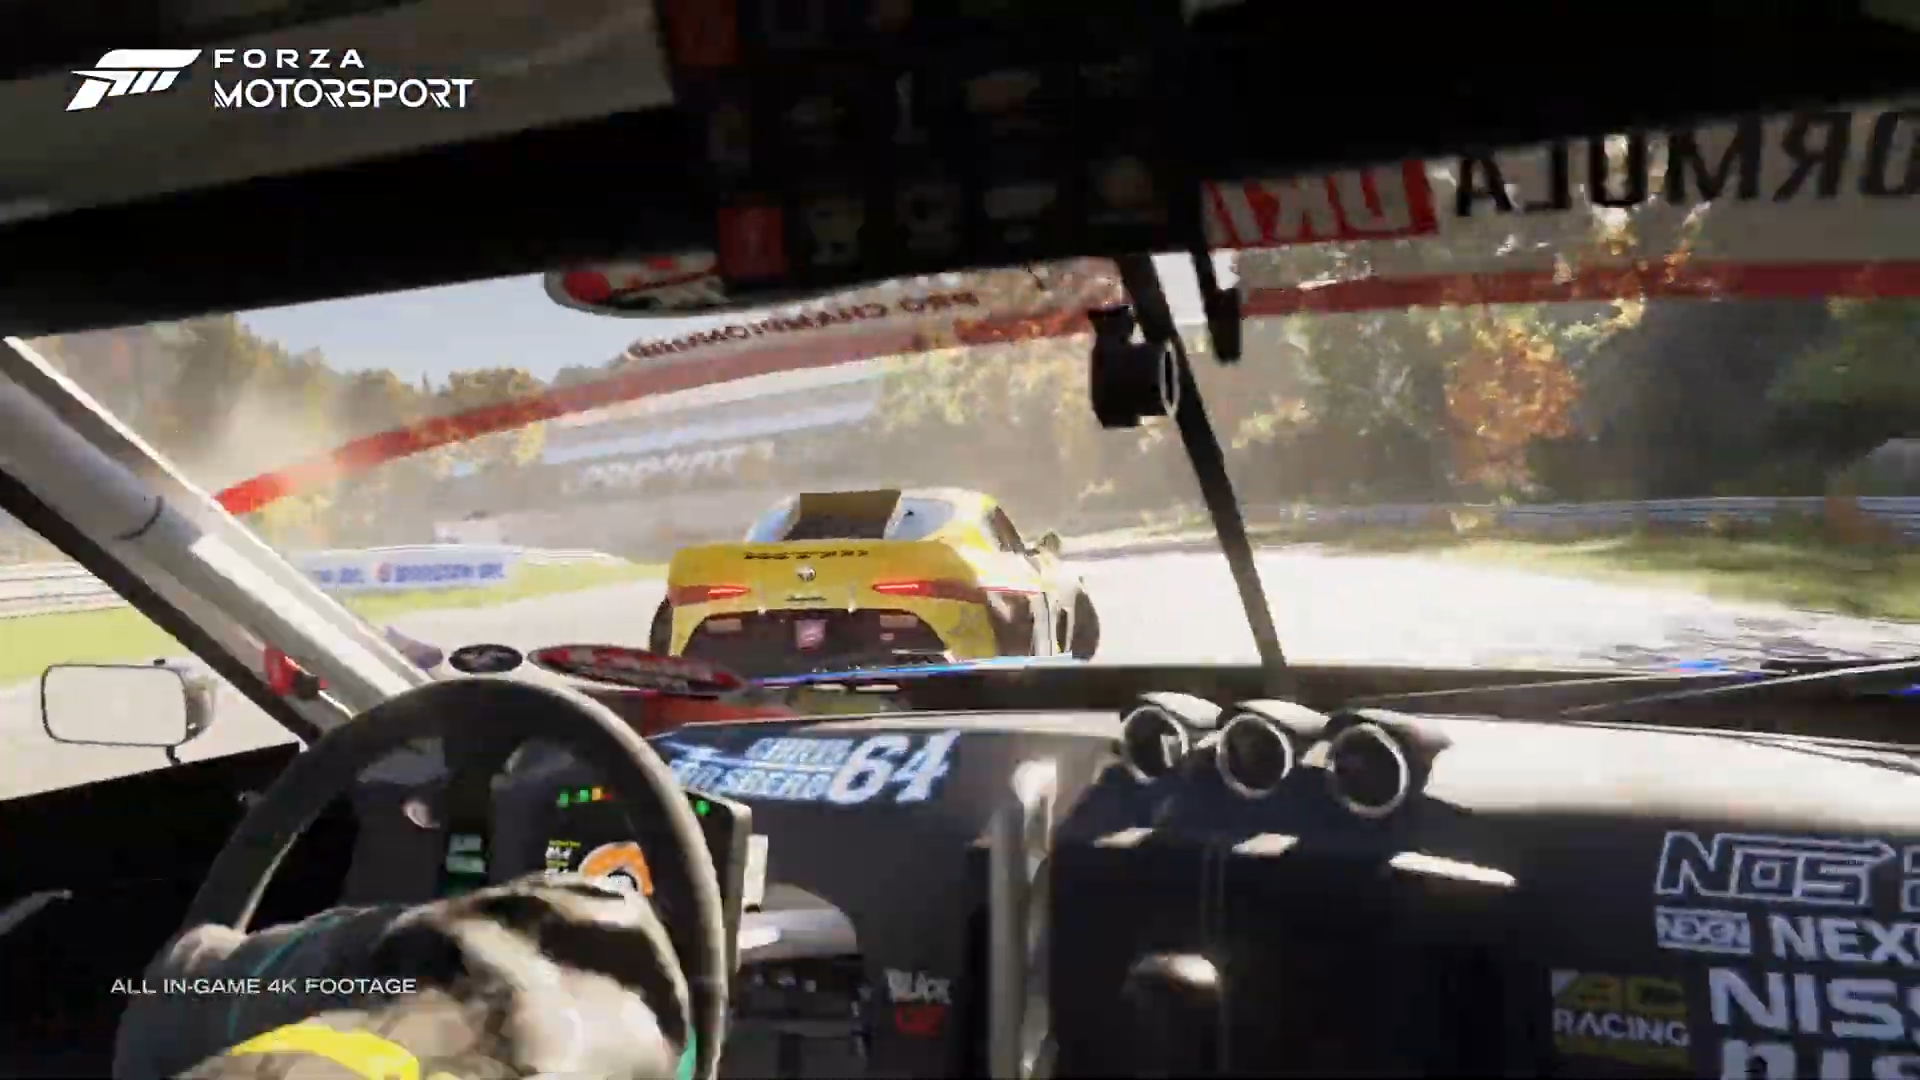 Forza Motorsport se ve impresionante en la demostracion del juego